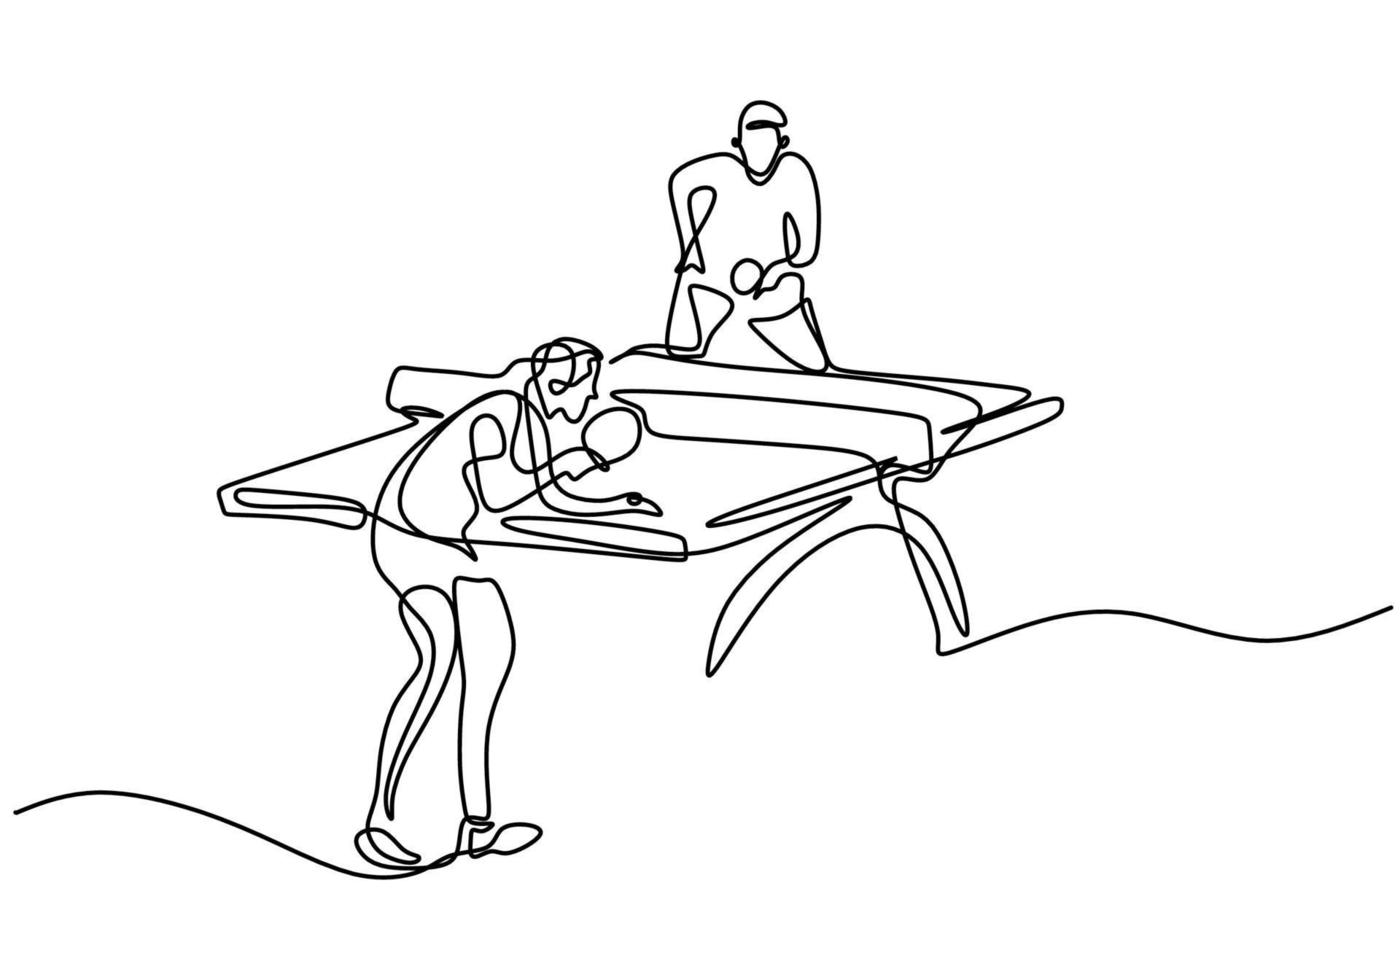 kontinuerlig linje ritning av ung glad man bordtennisspelare slog bollen. två idrottare som spelar bordtennis isolerad på vit bakgrund. tävling och sport övning koncept. vektor illustration